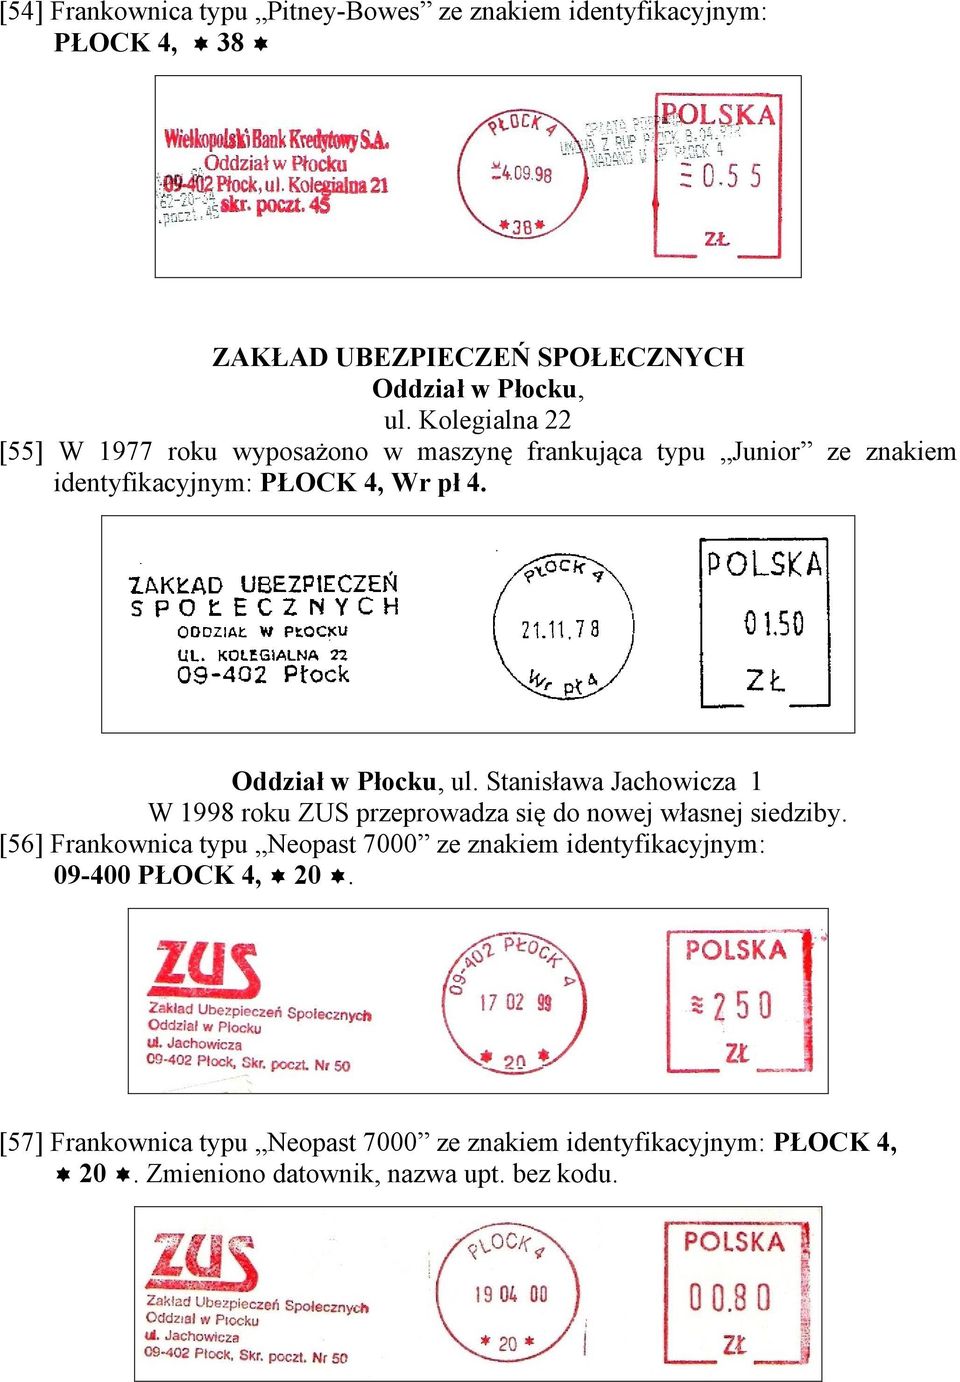 Oddział w Płocku, ul. Stanisława Jachowicza 1 W 1998 roku ZUS przeprowadza się do nowej własnej siedziby.